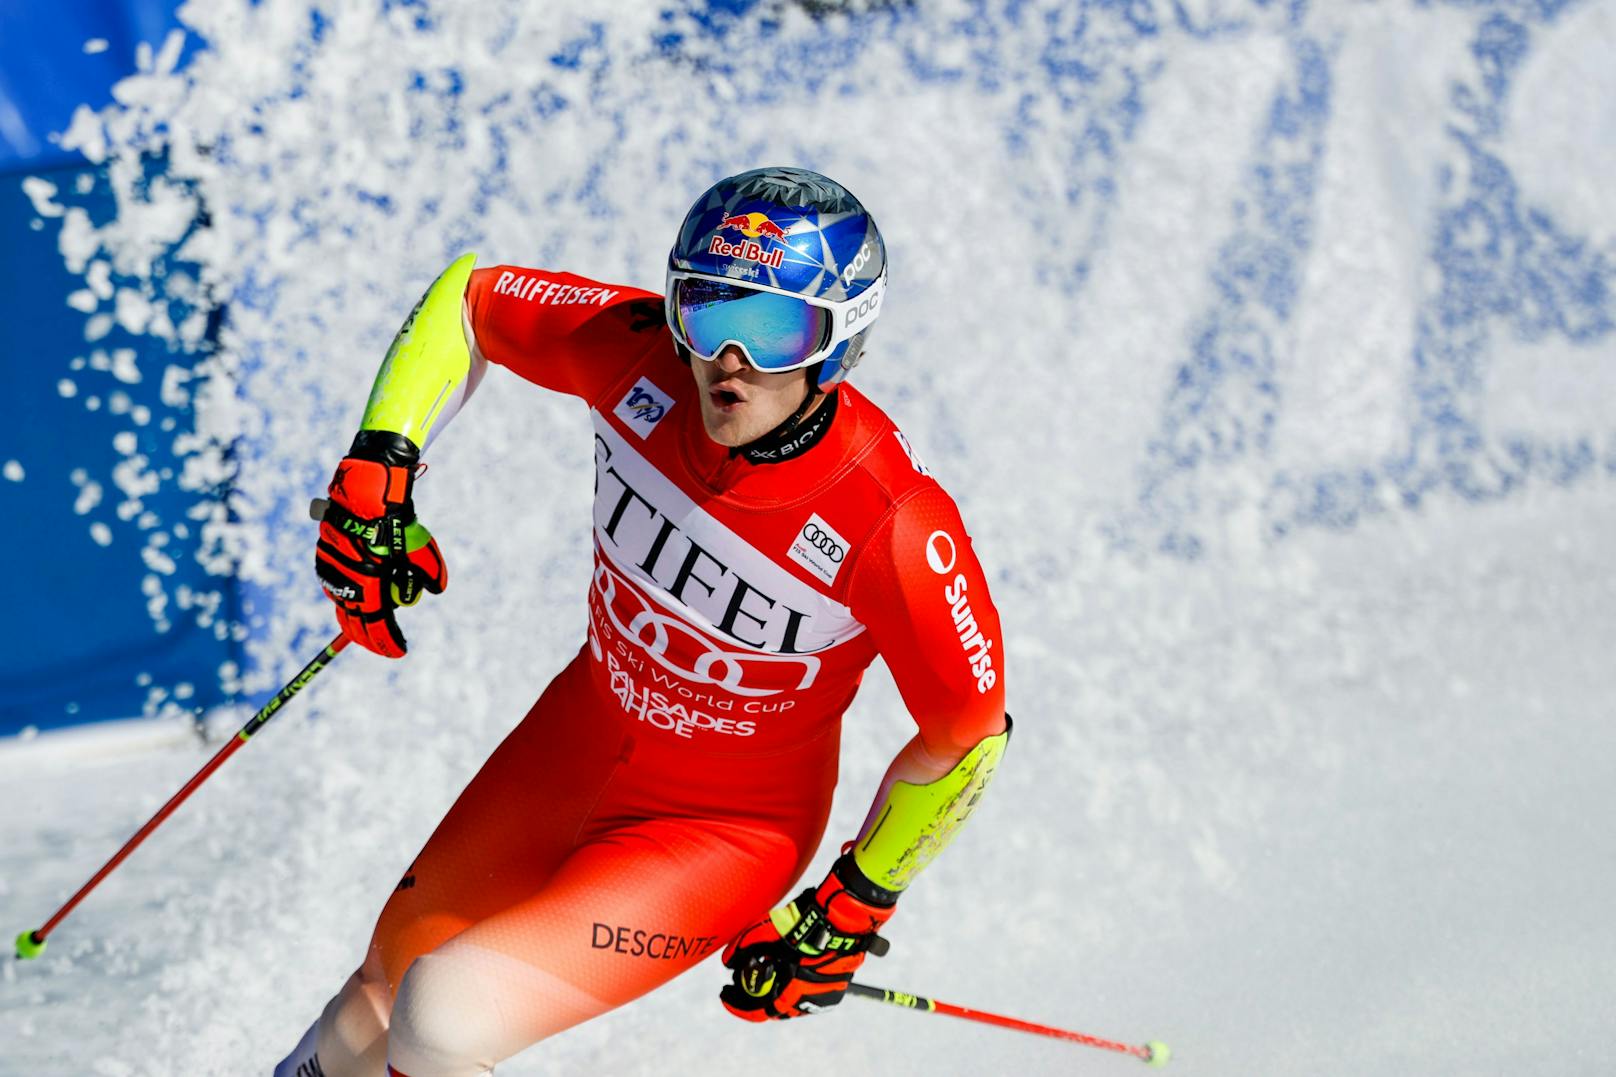 Auch im Riesenslalom von Palisades Tahoe führte kein Weg an dem Schweizer Weltcup-Leader Marco Odermatt vorbei. Alle sieben Riesentorläufe der Saison gingen an den Schweizer, der mit dem Sieg vorzeitig den Gesamtweltcup gewann. Raphael Haaser war der beste ÖSV-Athlet auf Rang sieben.